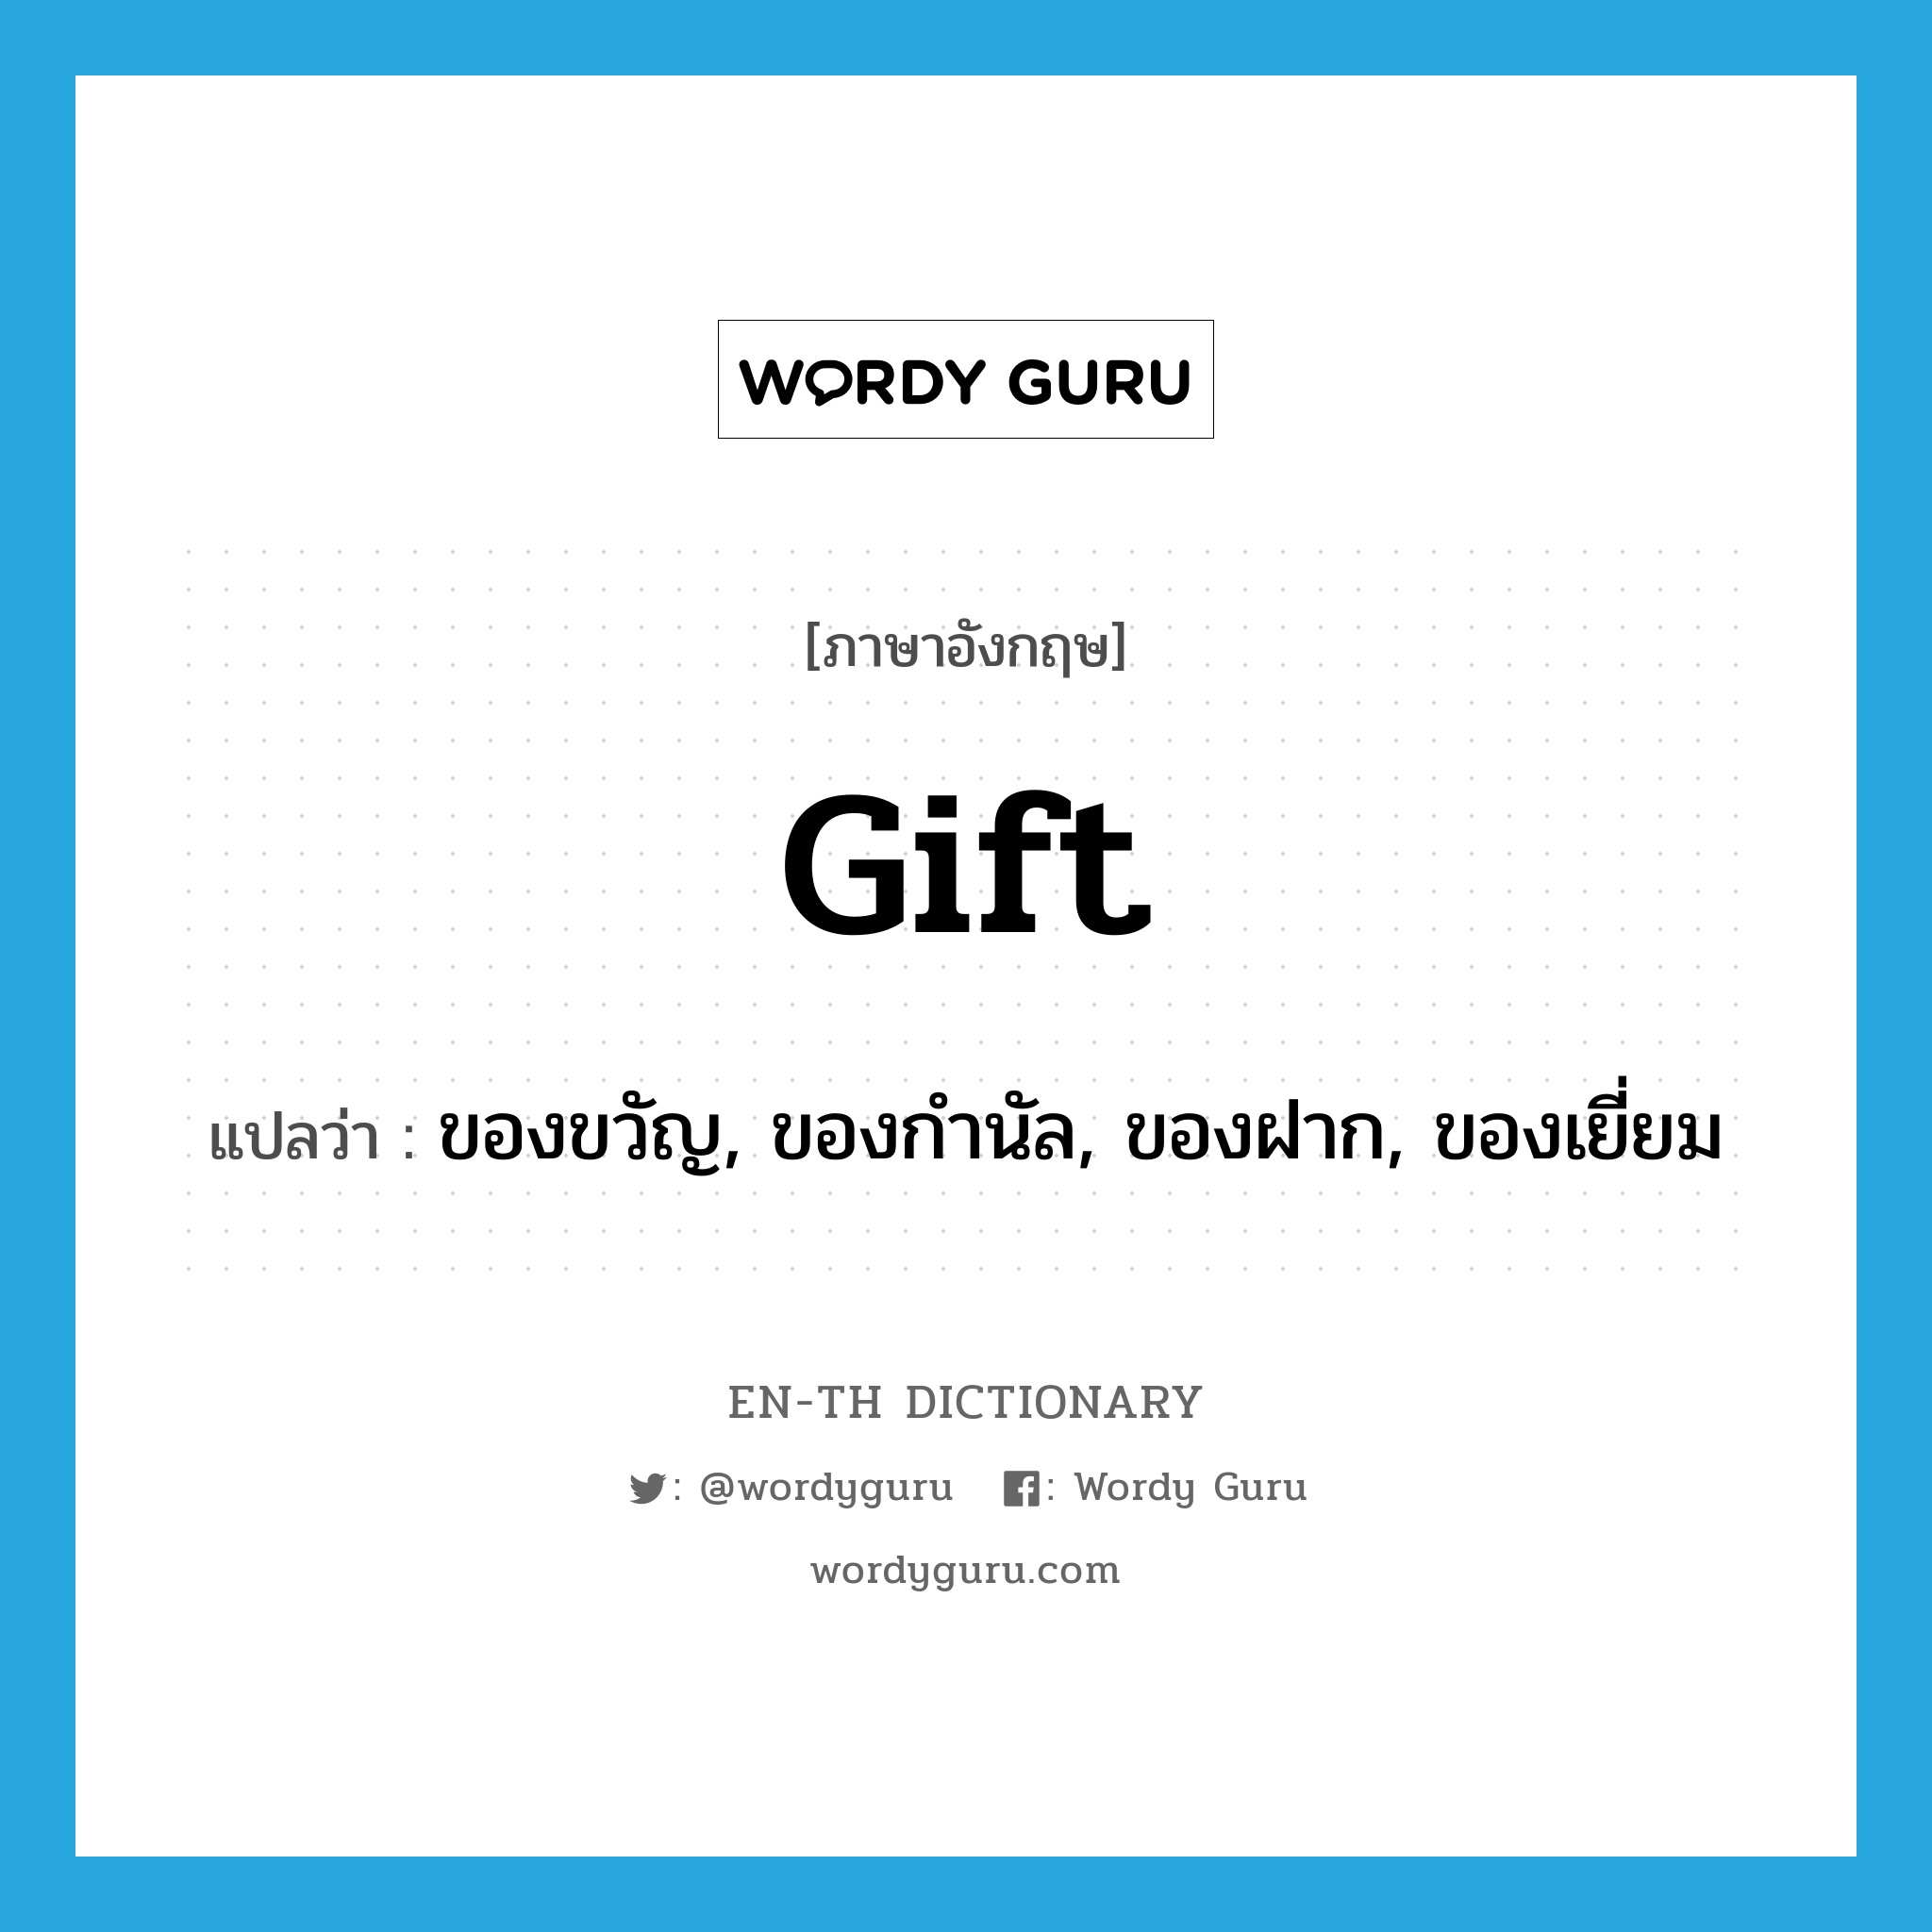 ของขวัญ, ของกำนัล, ของฝาก, ของเยี่ยม ภาษาอังกฤษ?, คำศัพท์ภาษาอังกฤษ ของขวัญ, ของกำนัล, ของฝาก, ของเยี่ยม แปลว่า gift ประเภท N หมวด N